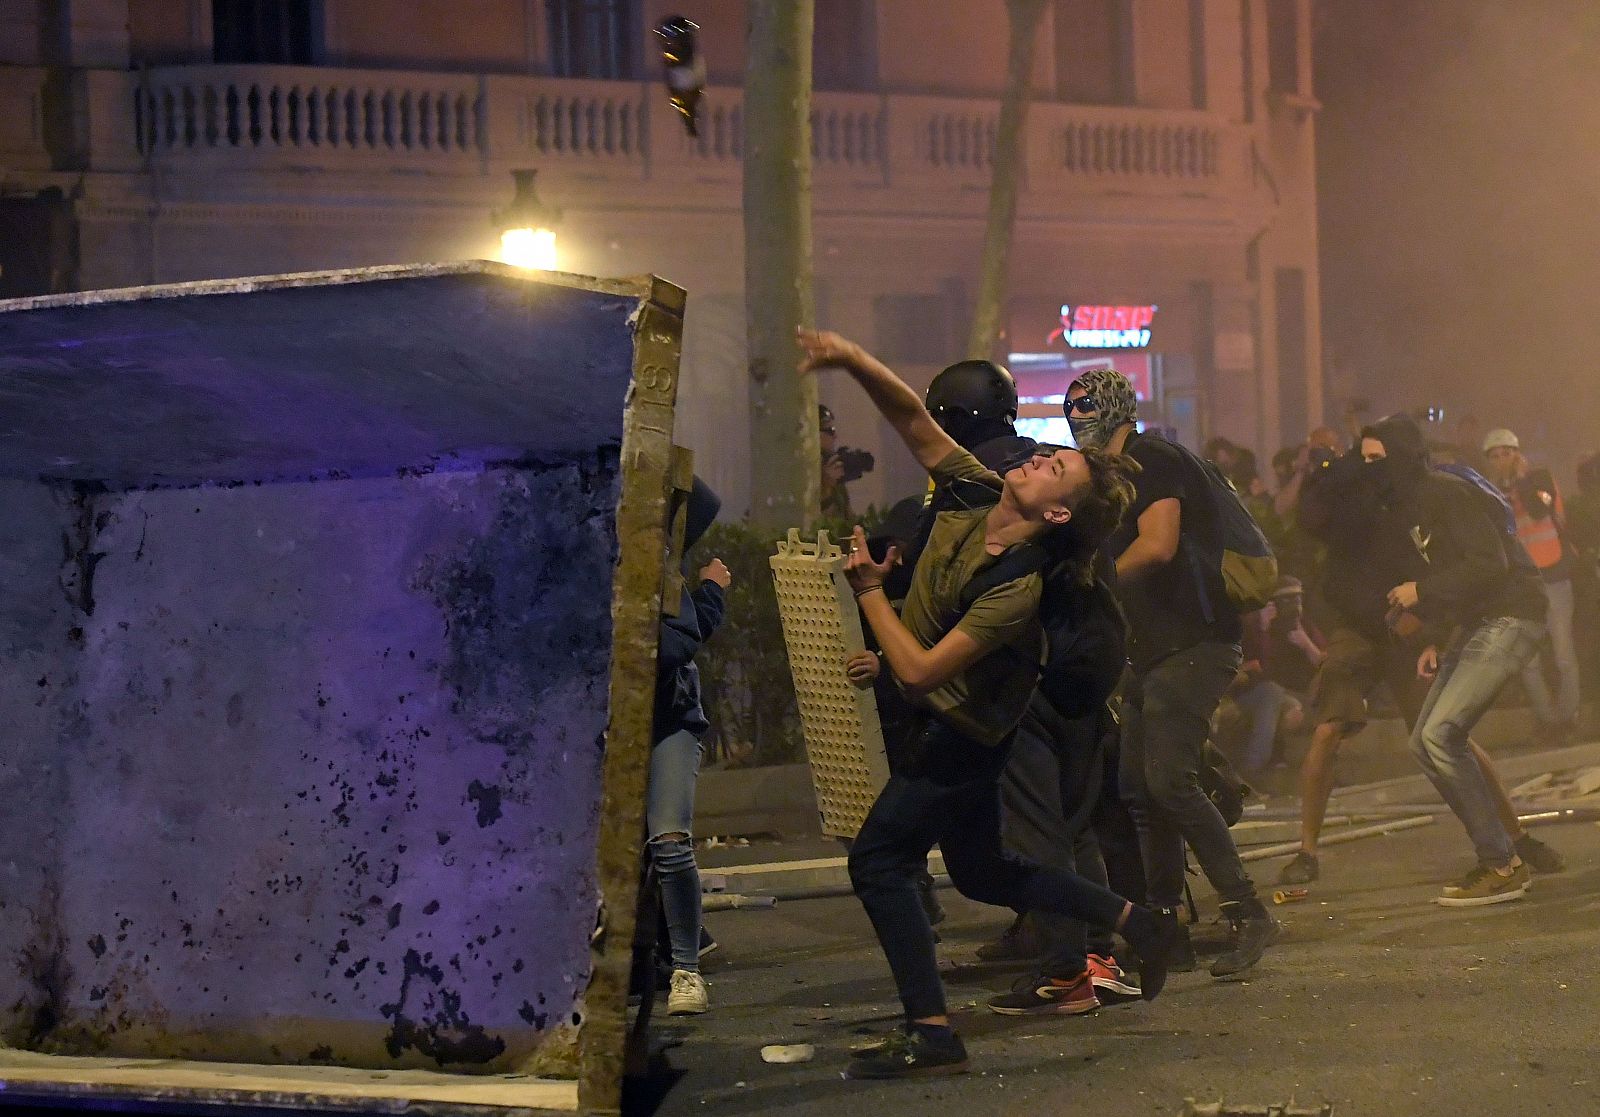 Els concentrats llancen objectes contra la policia